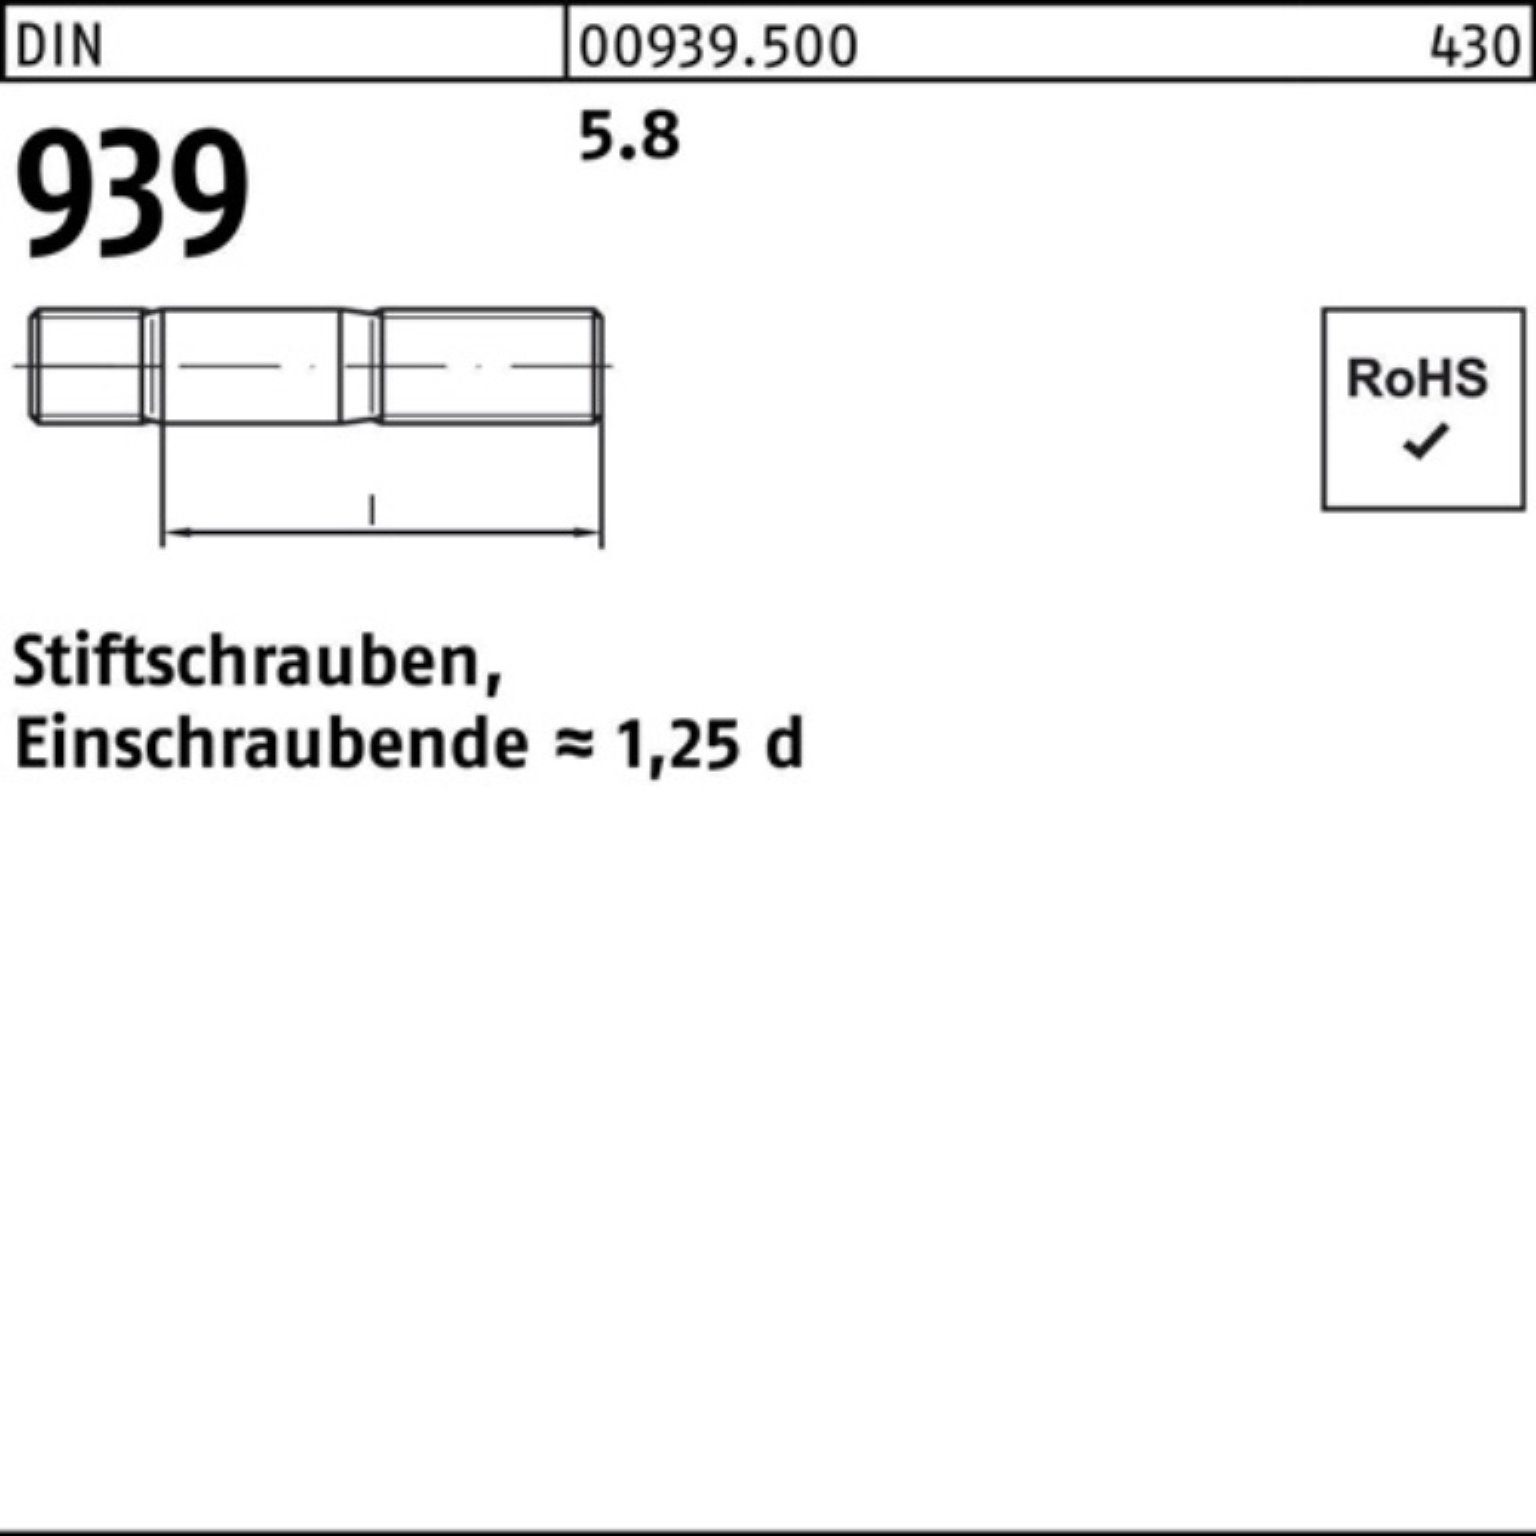 Stiftschraube S Pack M8x Stiftschraube 100er 5.8 939 DIN 100 70 Reyher Einschraubende=1,25d